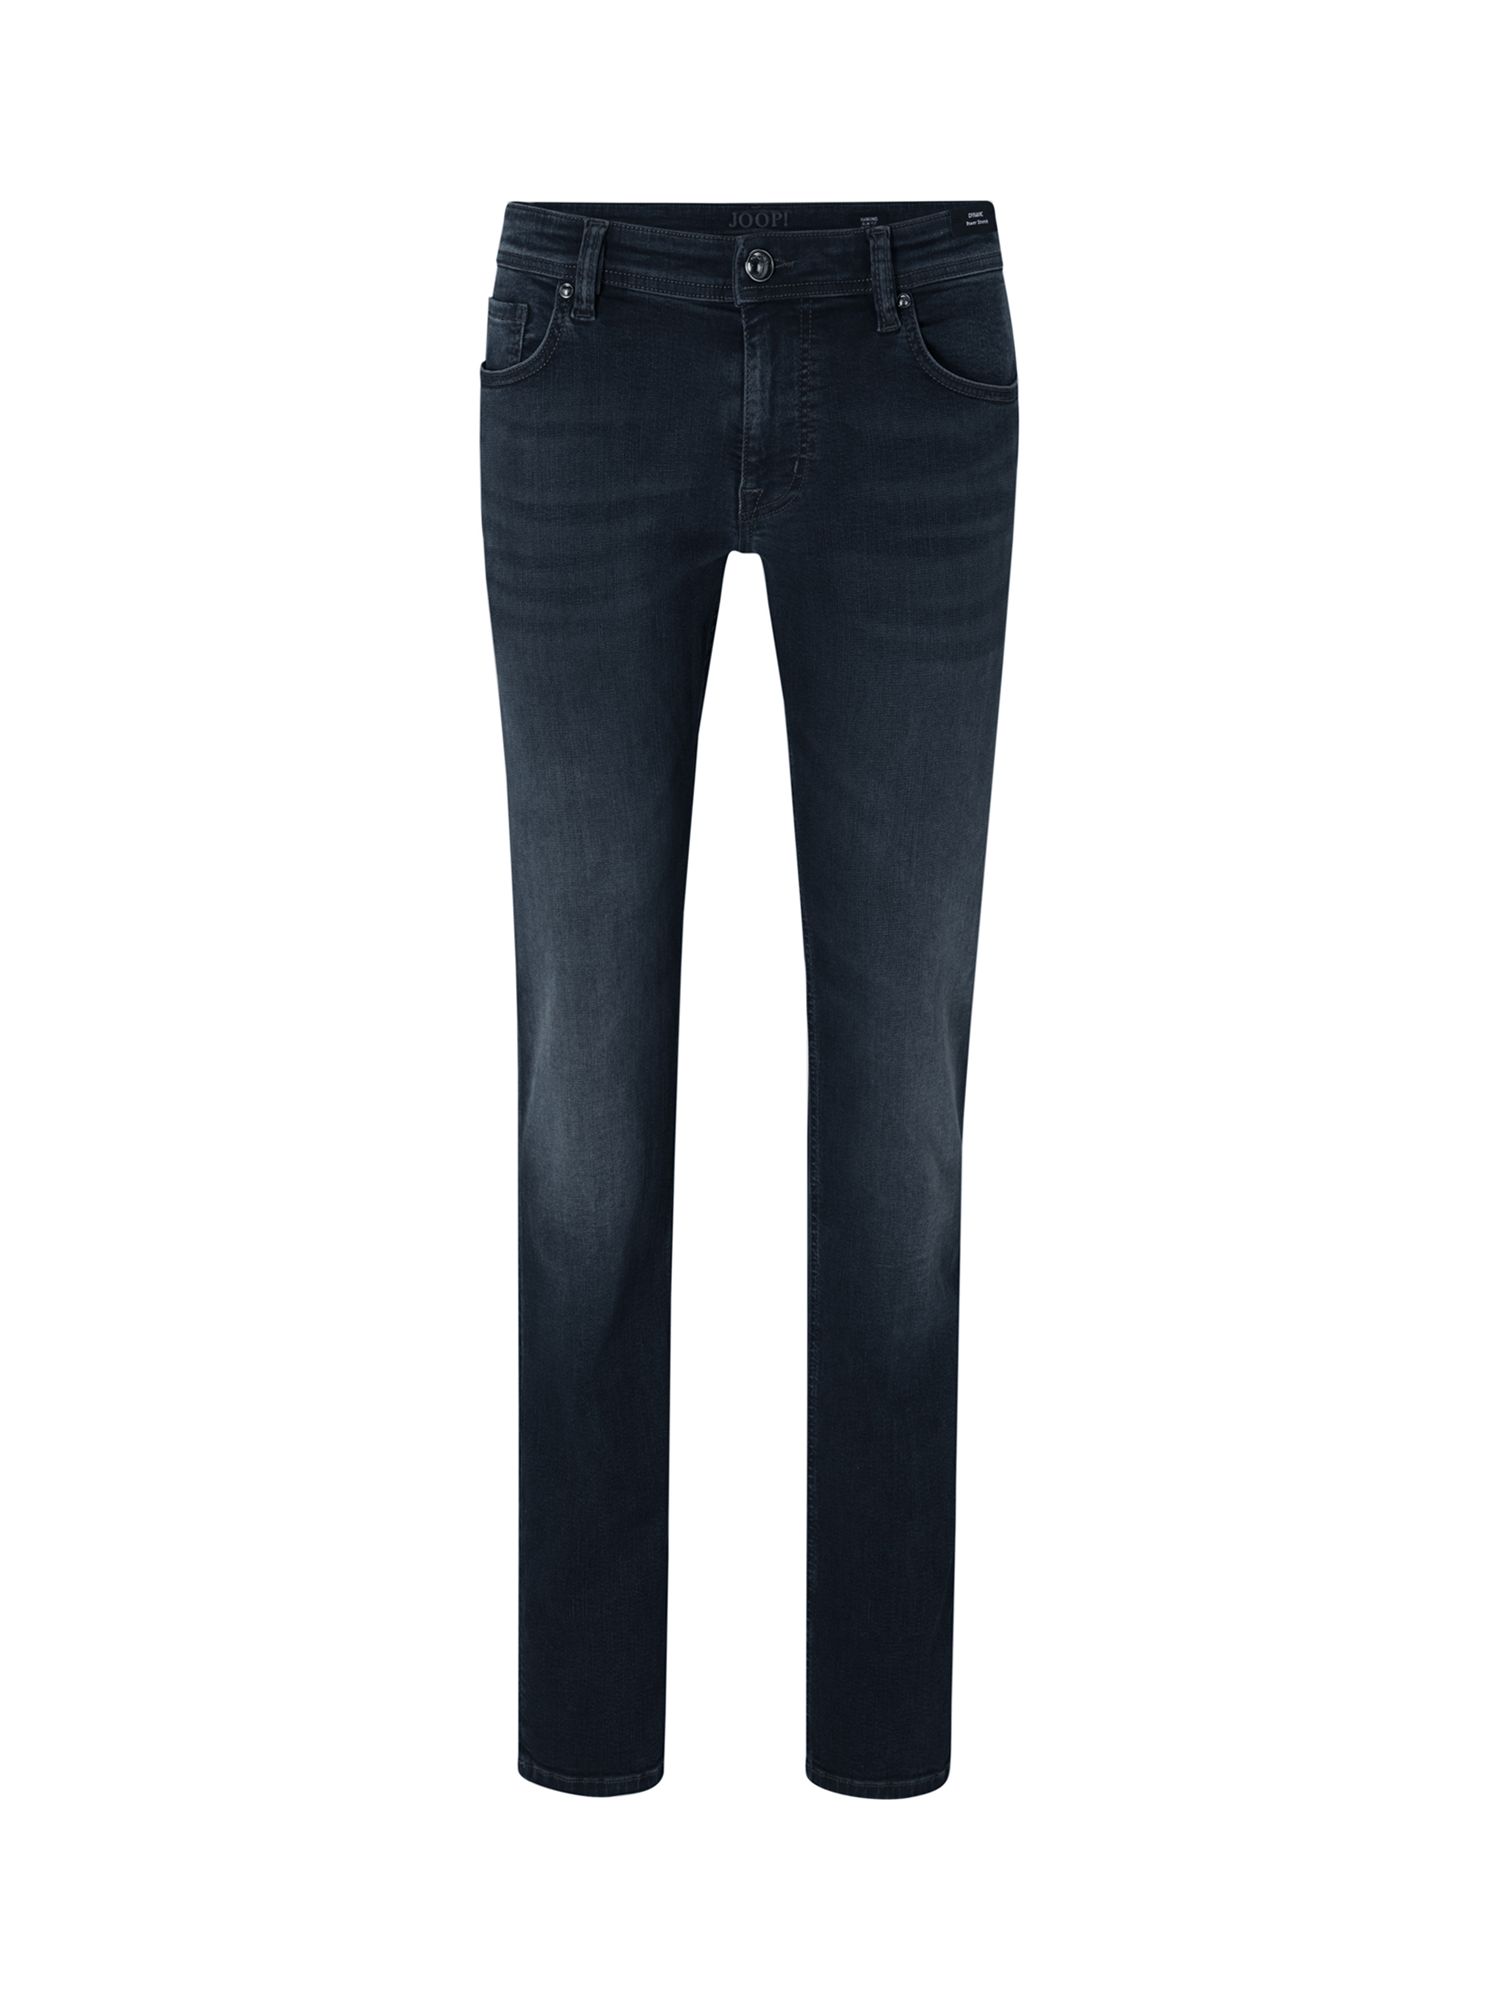 JOOP! Hamond Slim Fit Jeans, Medium Blue, W36/L30